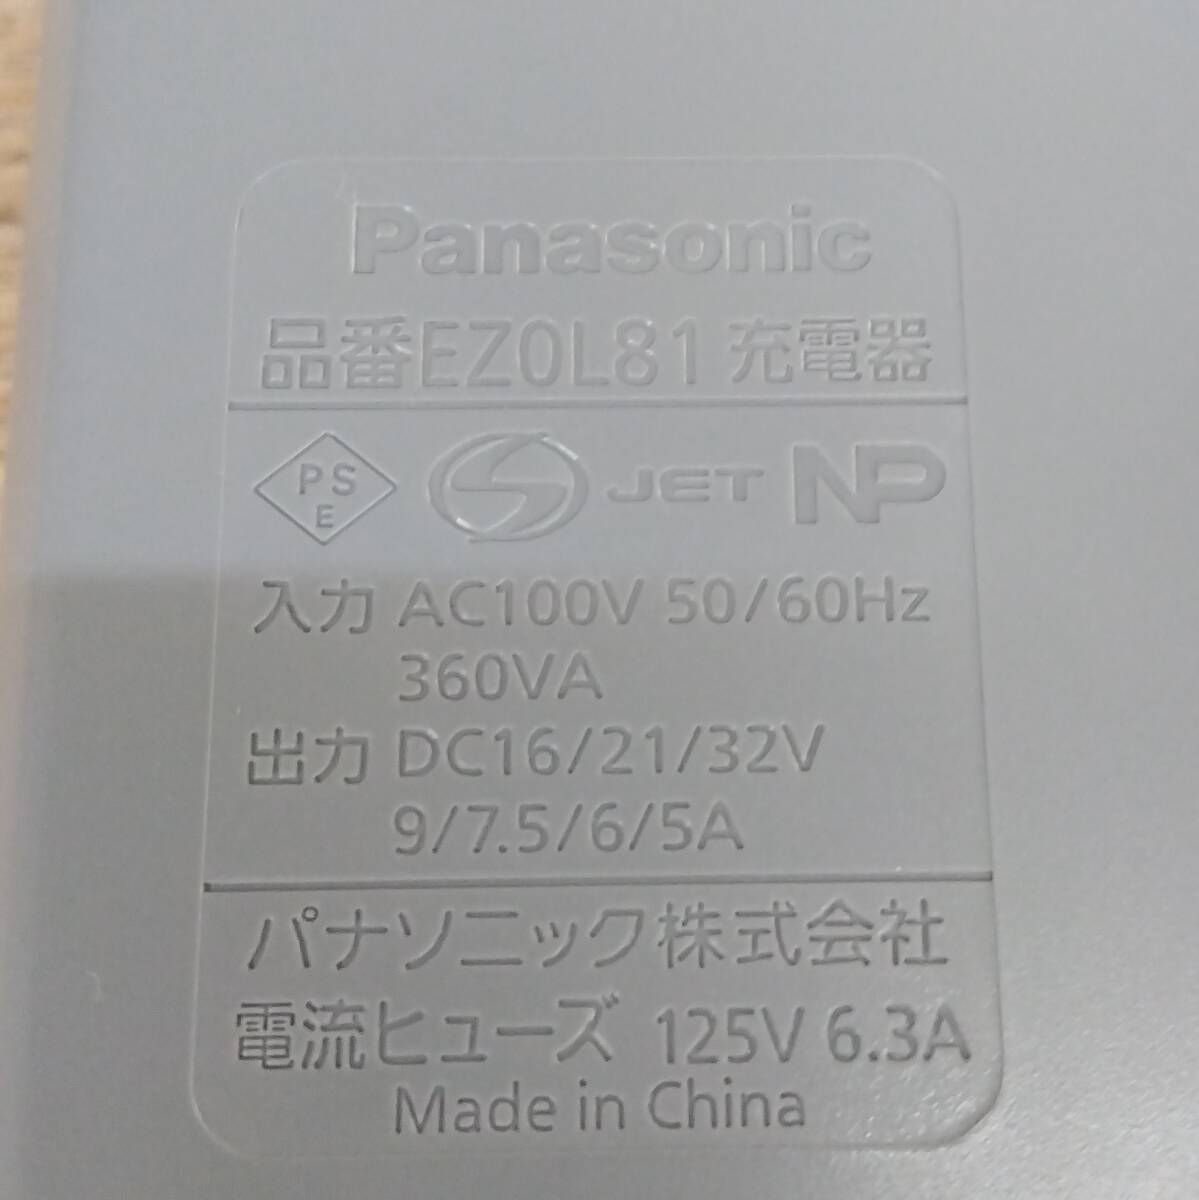 美品 パナソニック 充電器 EZ0L81 Panasonic 電動工具 ドライバー インパクトドライバー メンテナンス DIY 工具 工事 tkd02004603の画像6